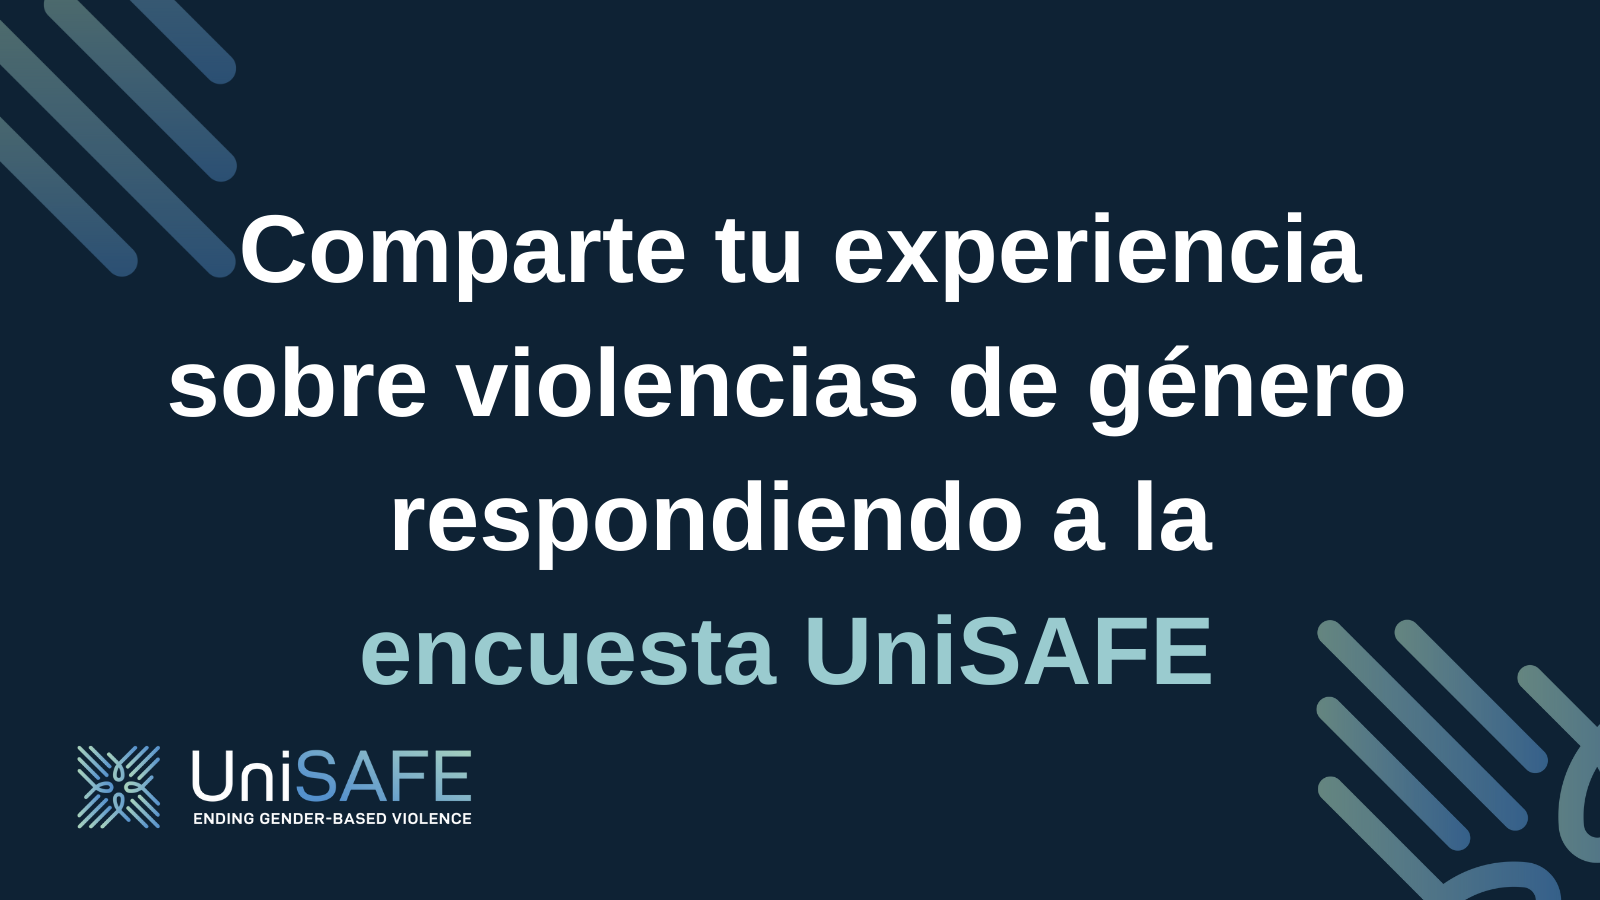 Comparte tu experiencia sobre violencias de género. Encuesta UniSAFE